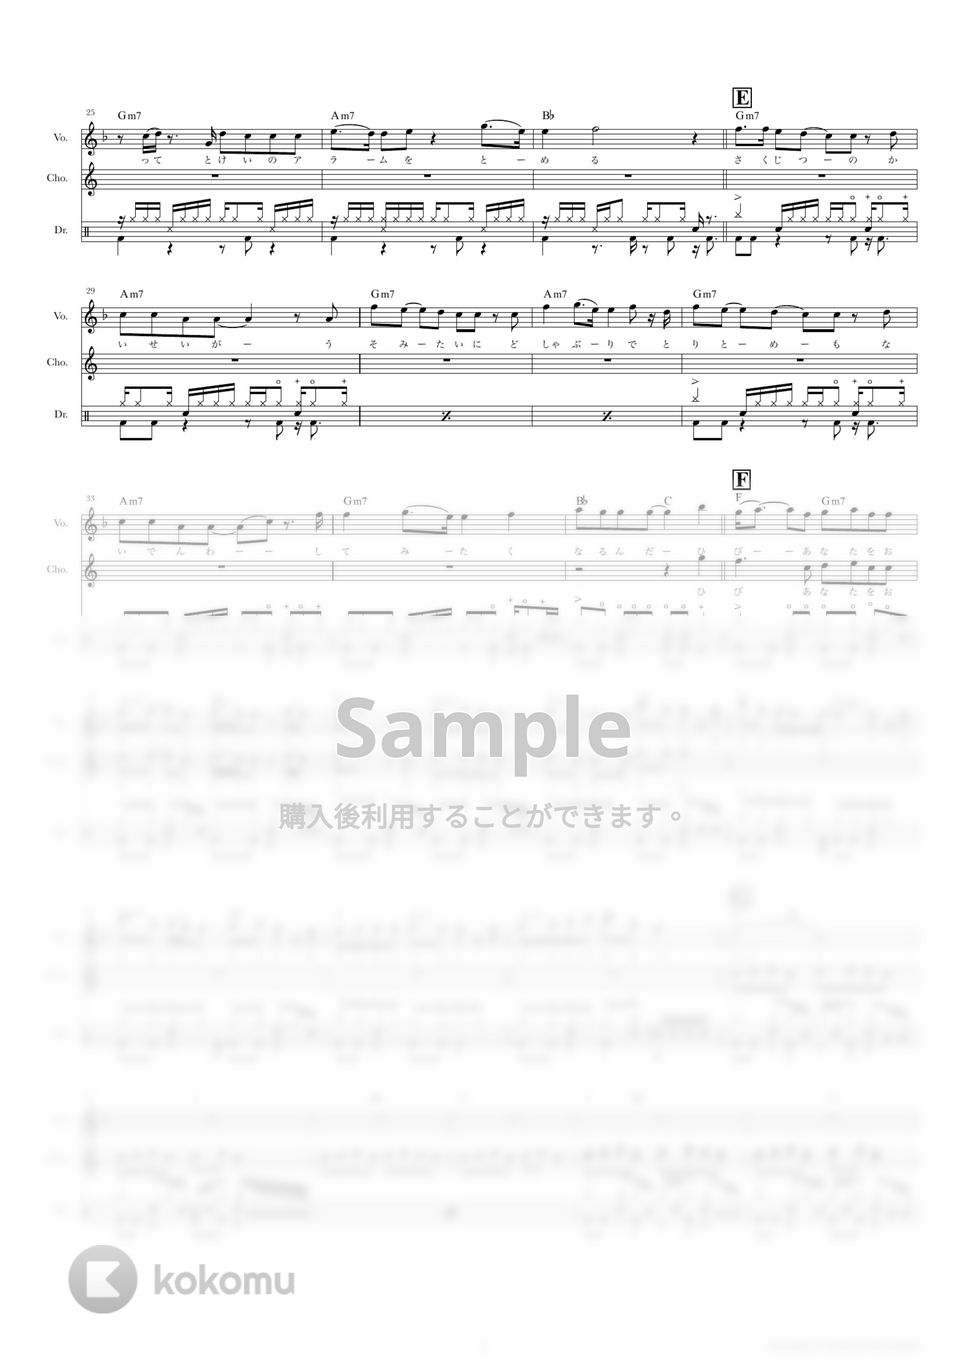 きのこ帝国 - 東京 (ドラムスコア・歌詞・コード付き) by TRIAD GUITAR SCHOOL